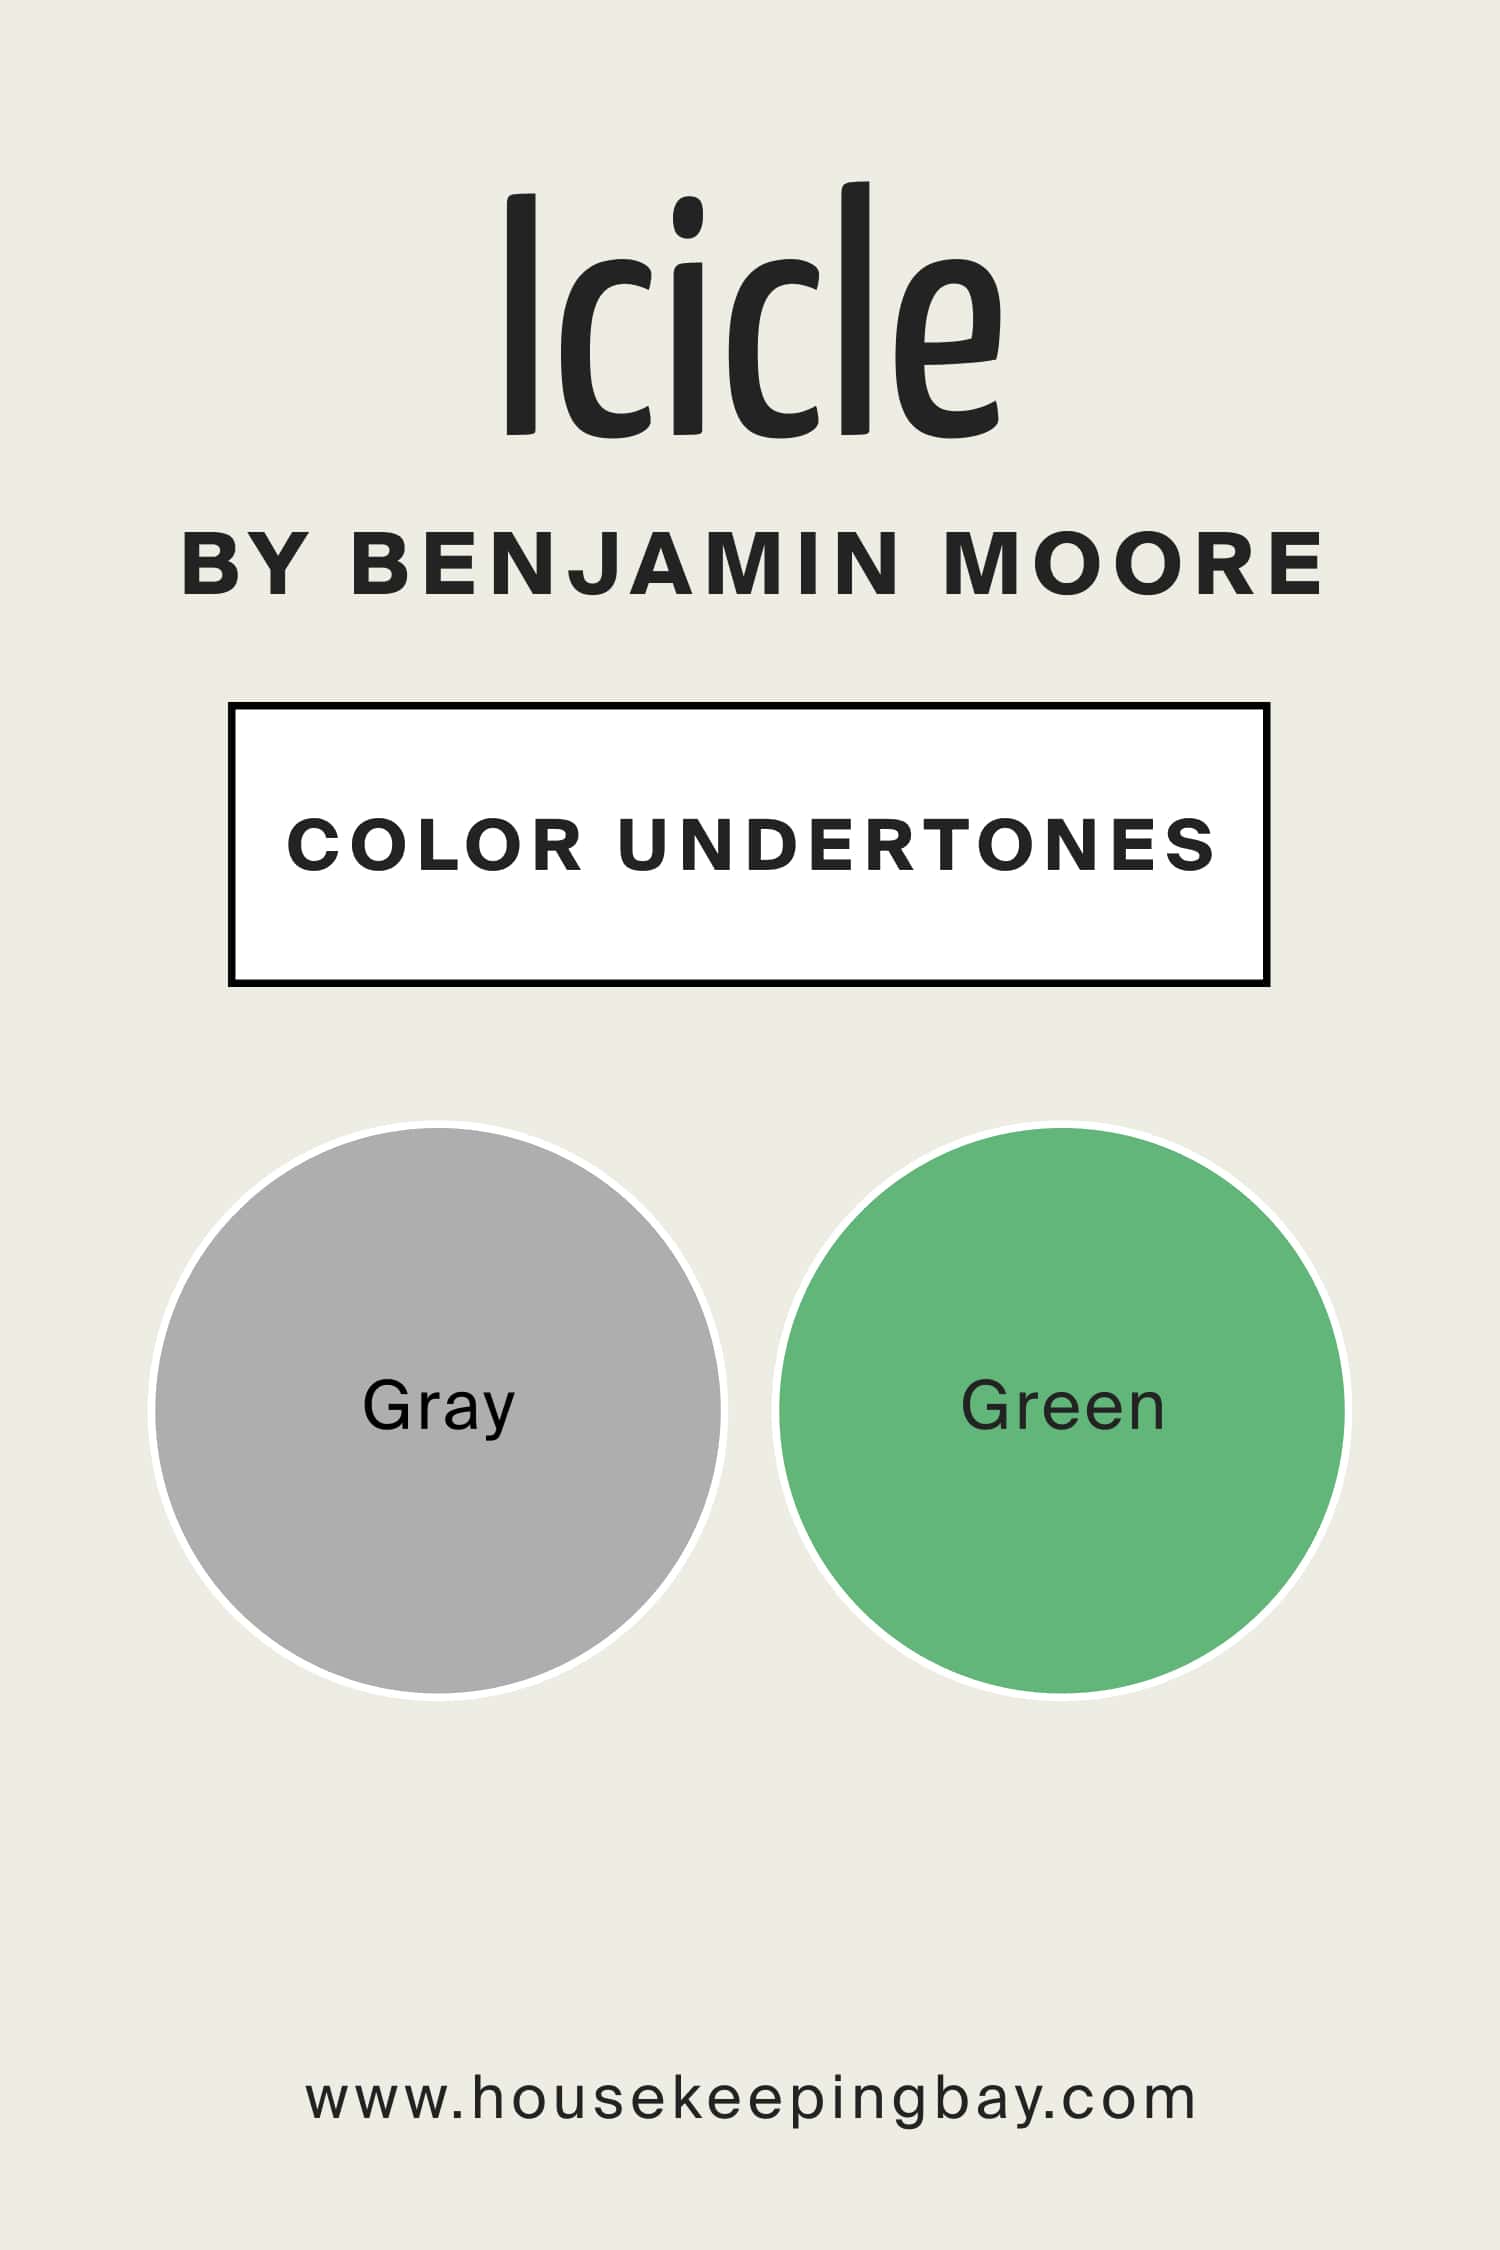 Icicle 2142 70 by Benjamin Moore Color Undertones